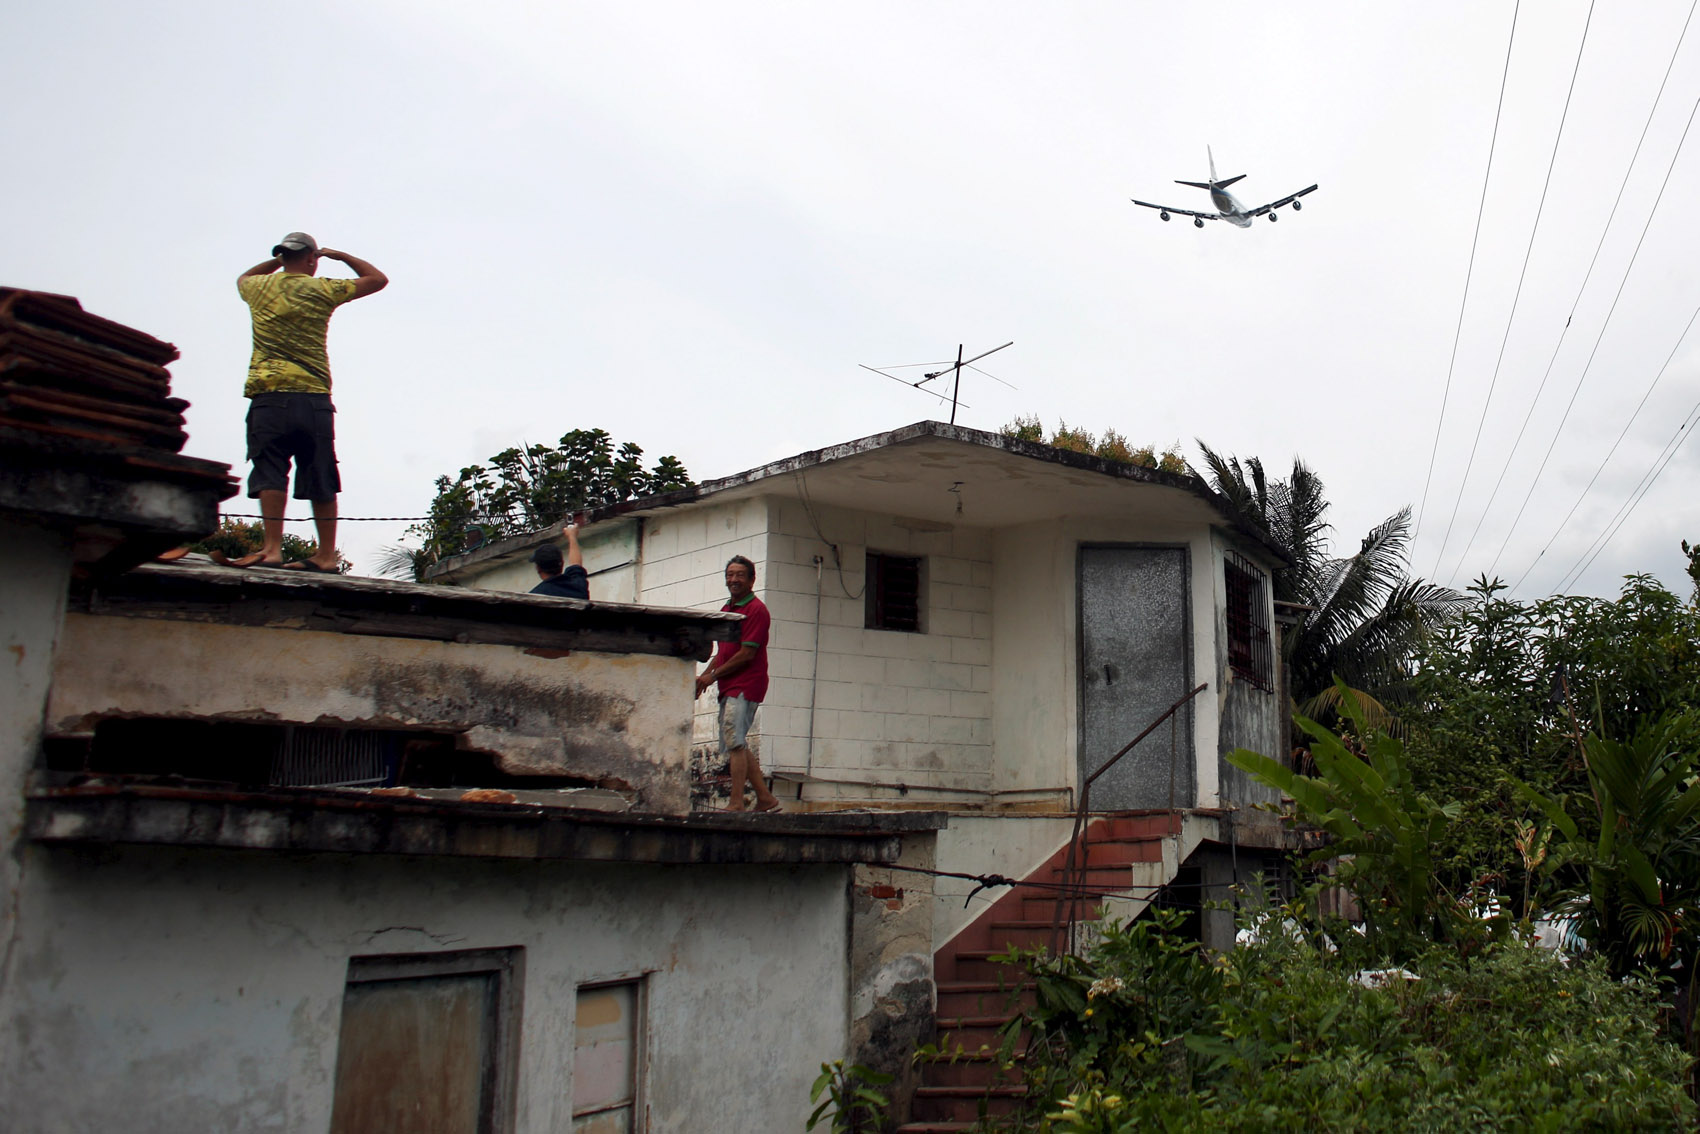 22/03 - Pessoas observam o avião presidencial americano Air Force One do telhado de uma casa em Havana, Cuba. O presidente Barack Obama deixou Cuba após uma visita histórica de três dias